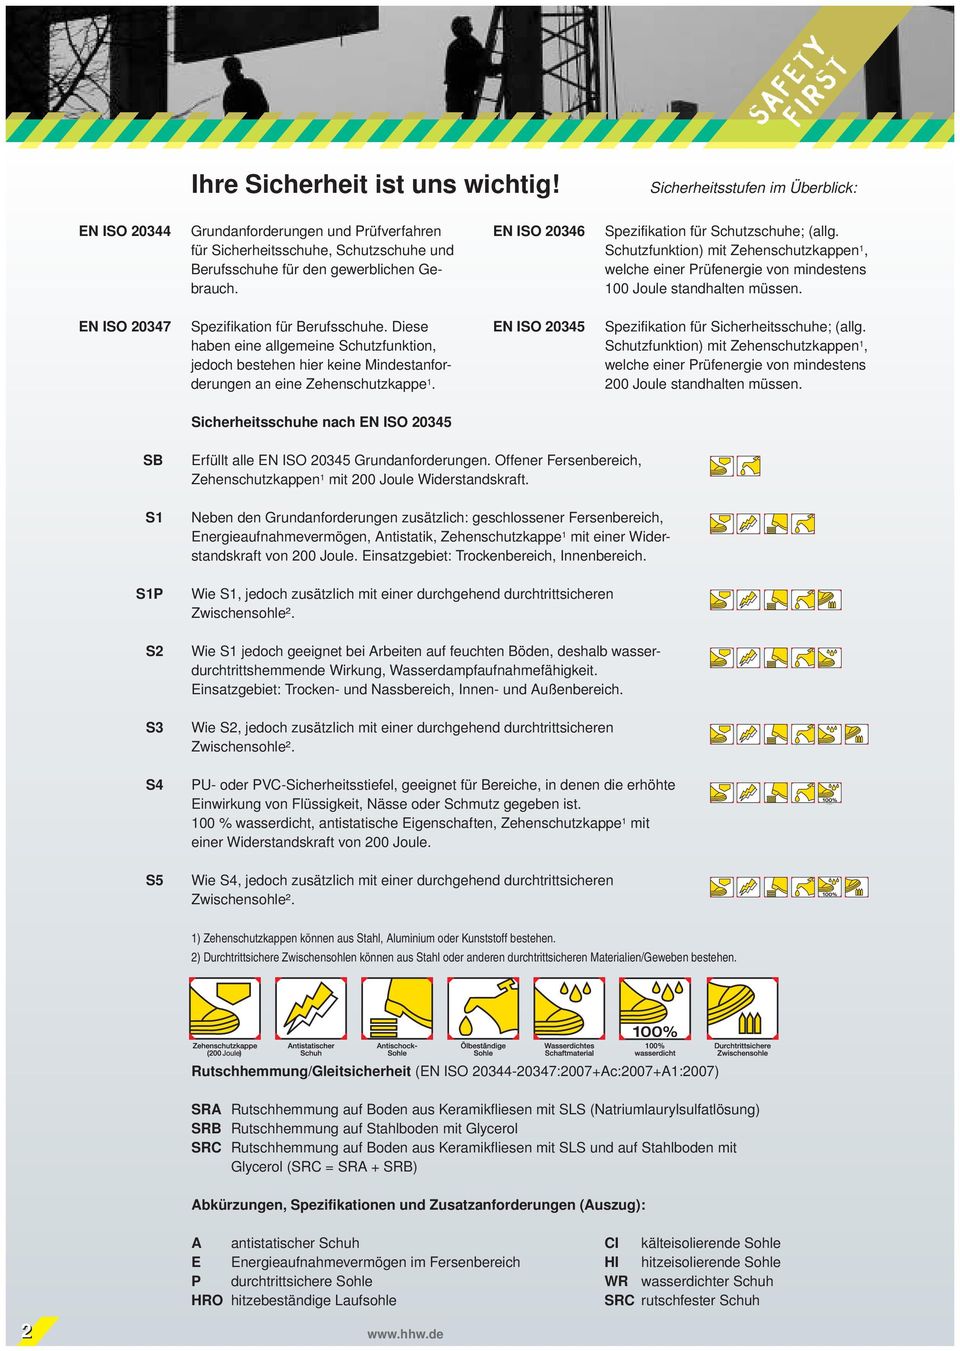 EN ISO 20346 Spezifikation für Schutzschuhe; (allg. Schutzfunktion) mit Zehenschutzkappen 1, welche einer Prüf energie von mindestens 100 Joule standhalten müssen.